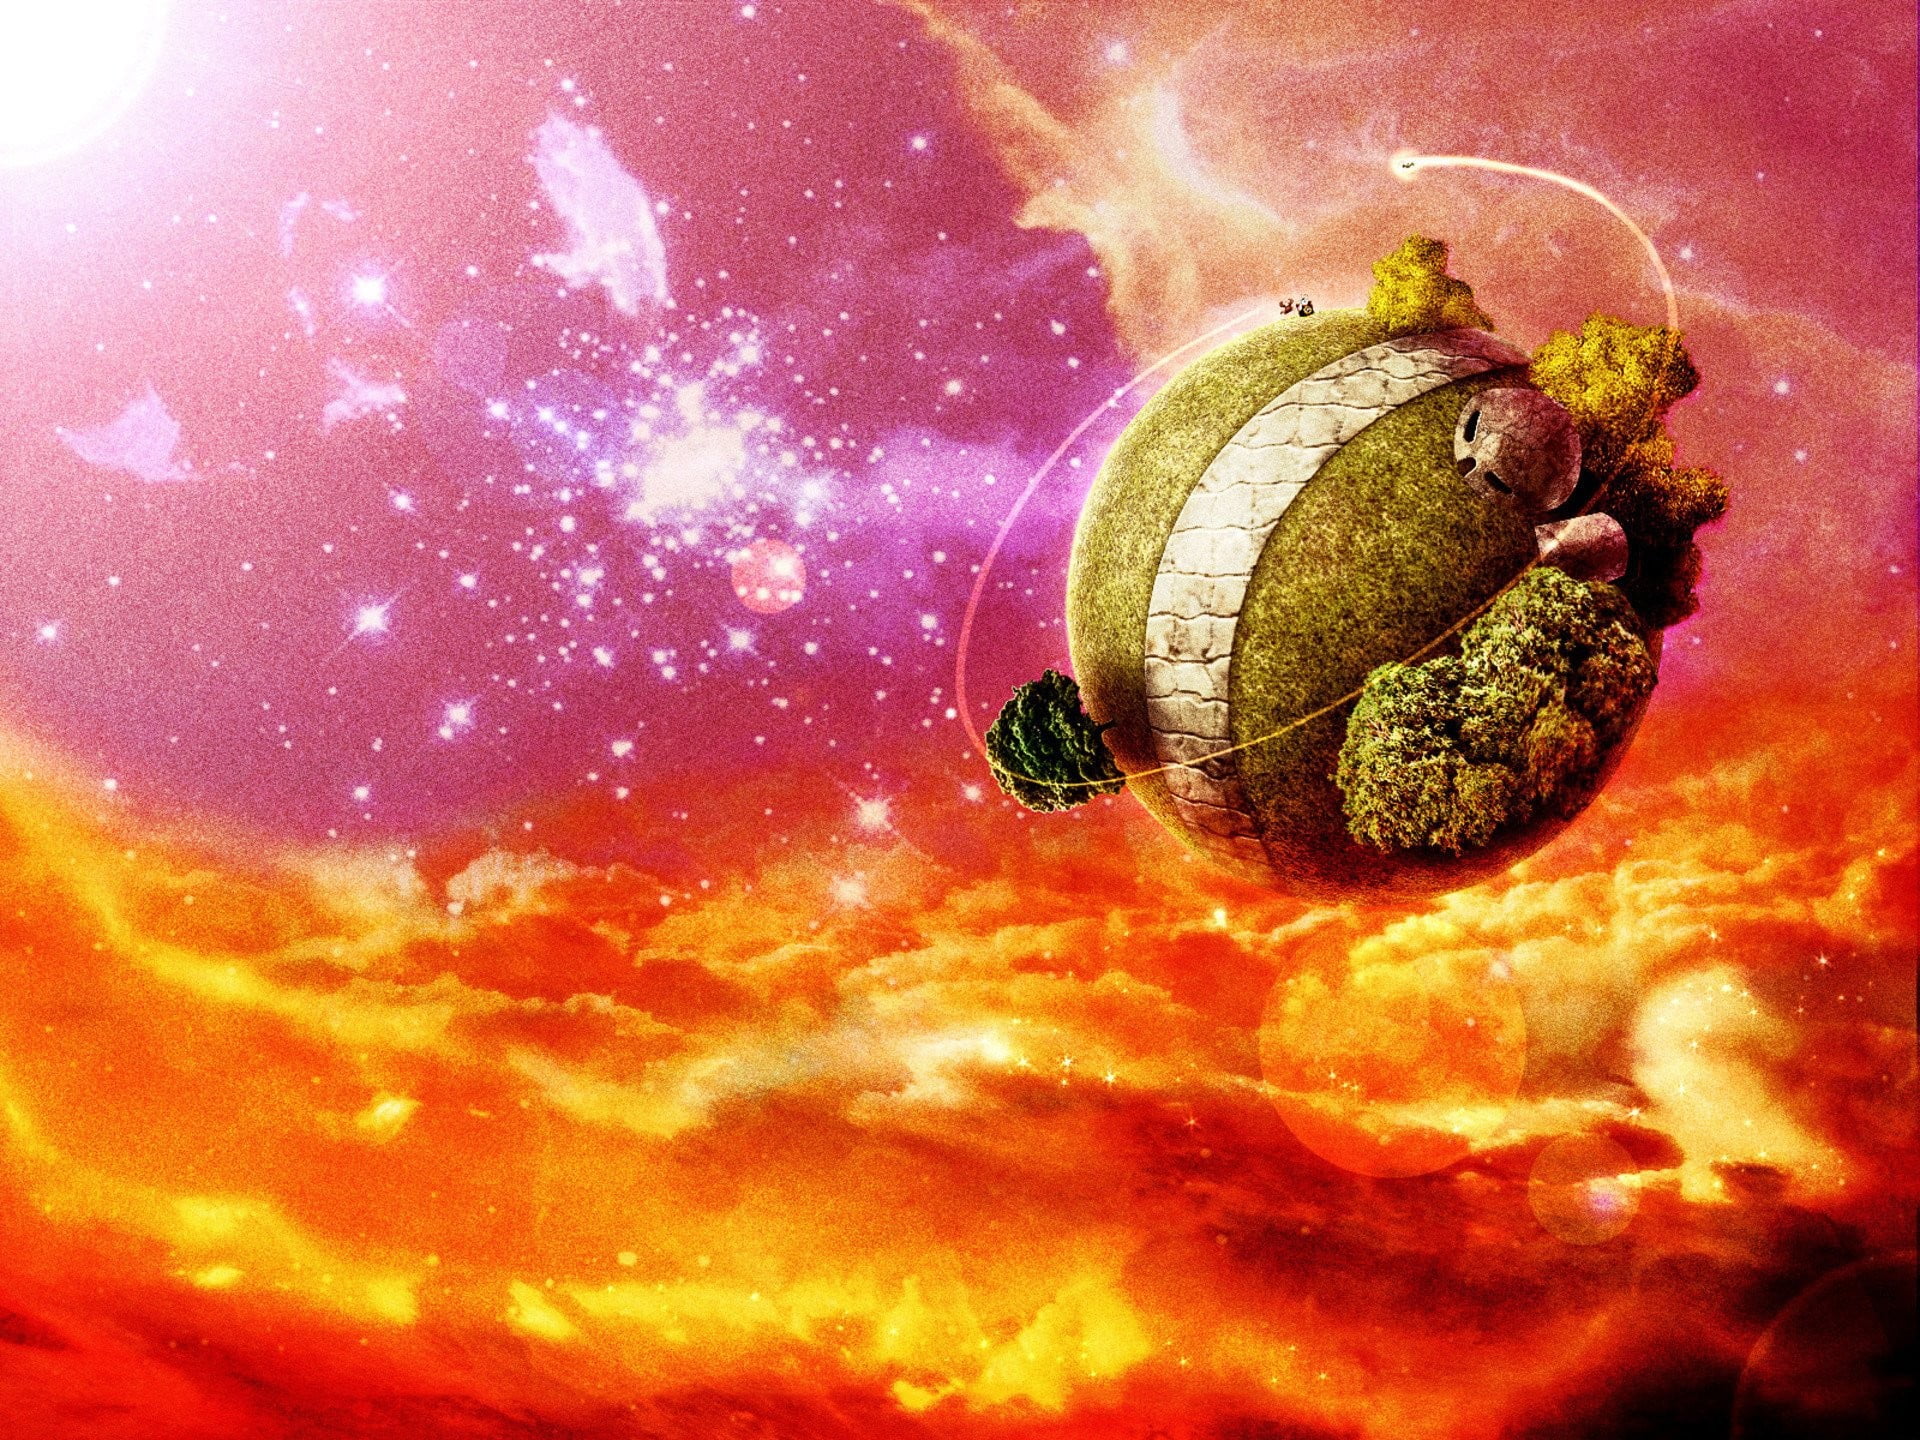 green planet illustration, Dragon Ball Z, King Kai's planet, planet - Space